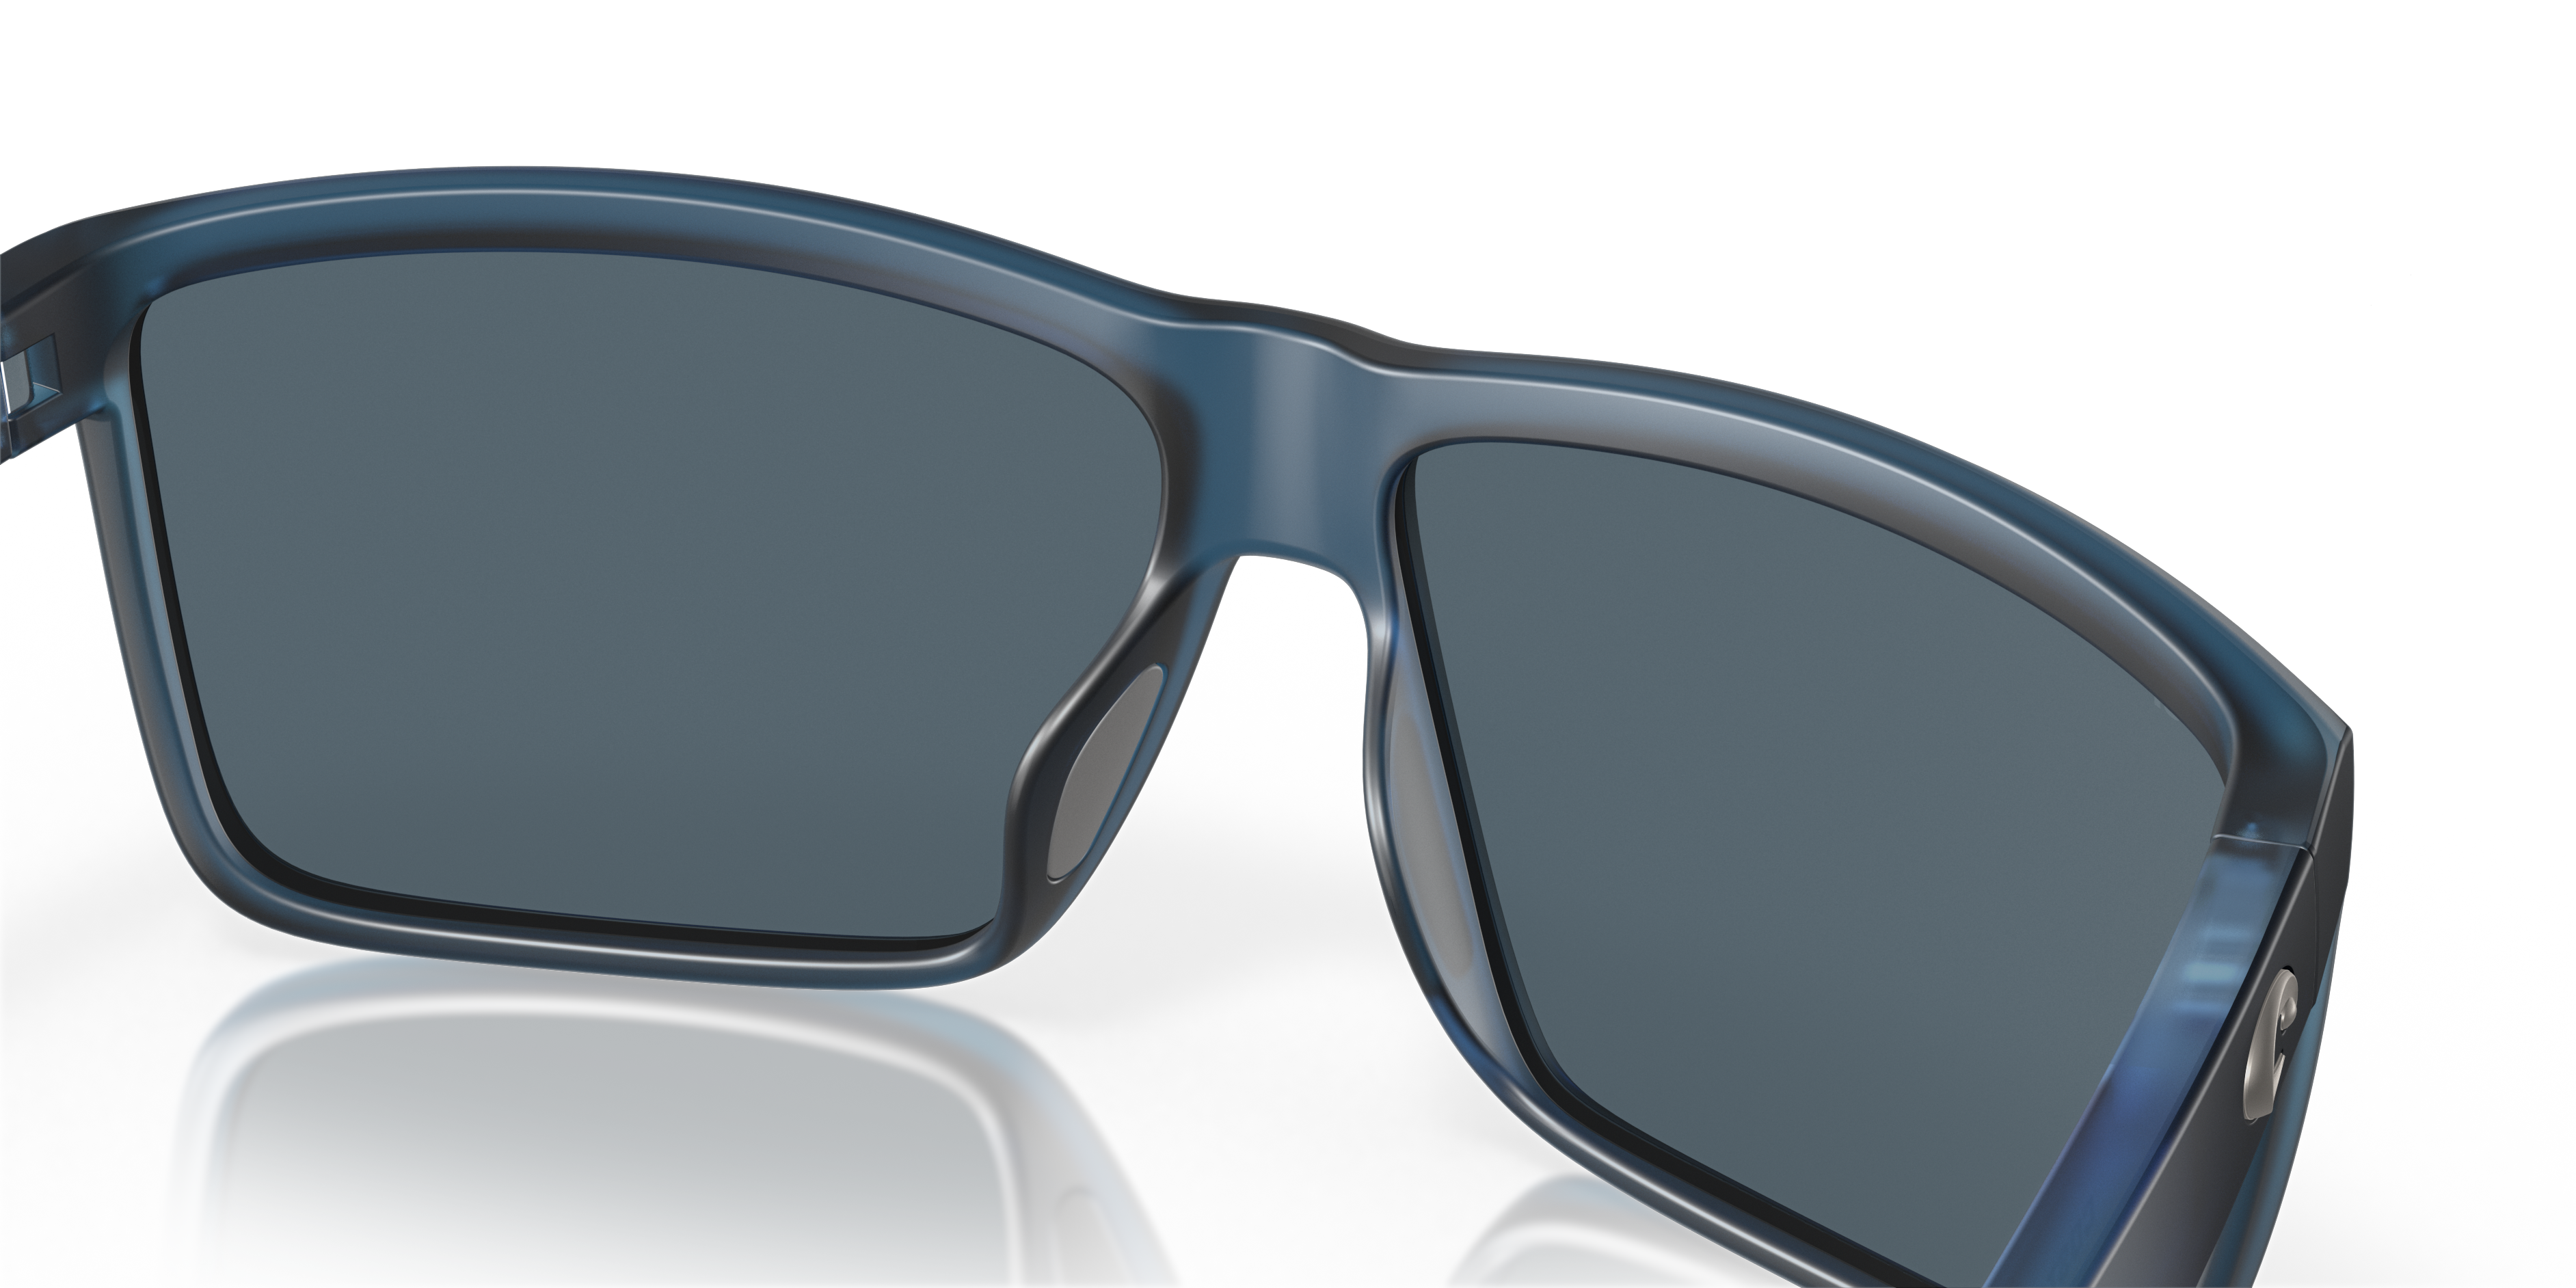 Rinconcito Polarized Sunglasses in Gray Silver Mirror | Costa Del Mar®